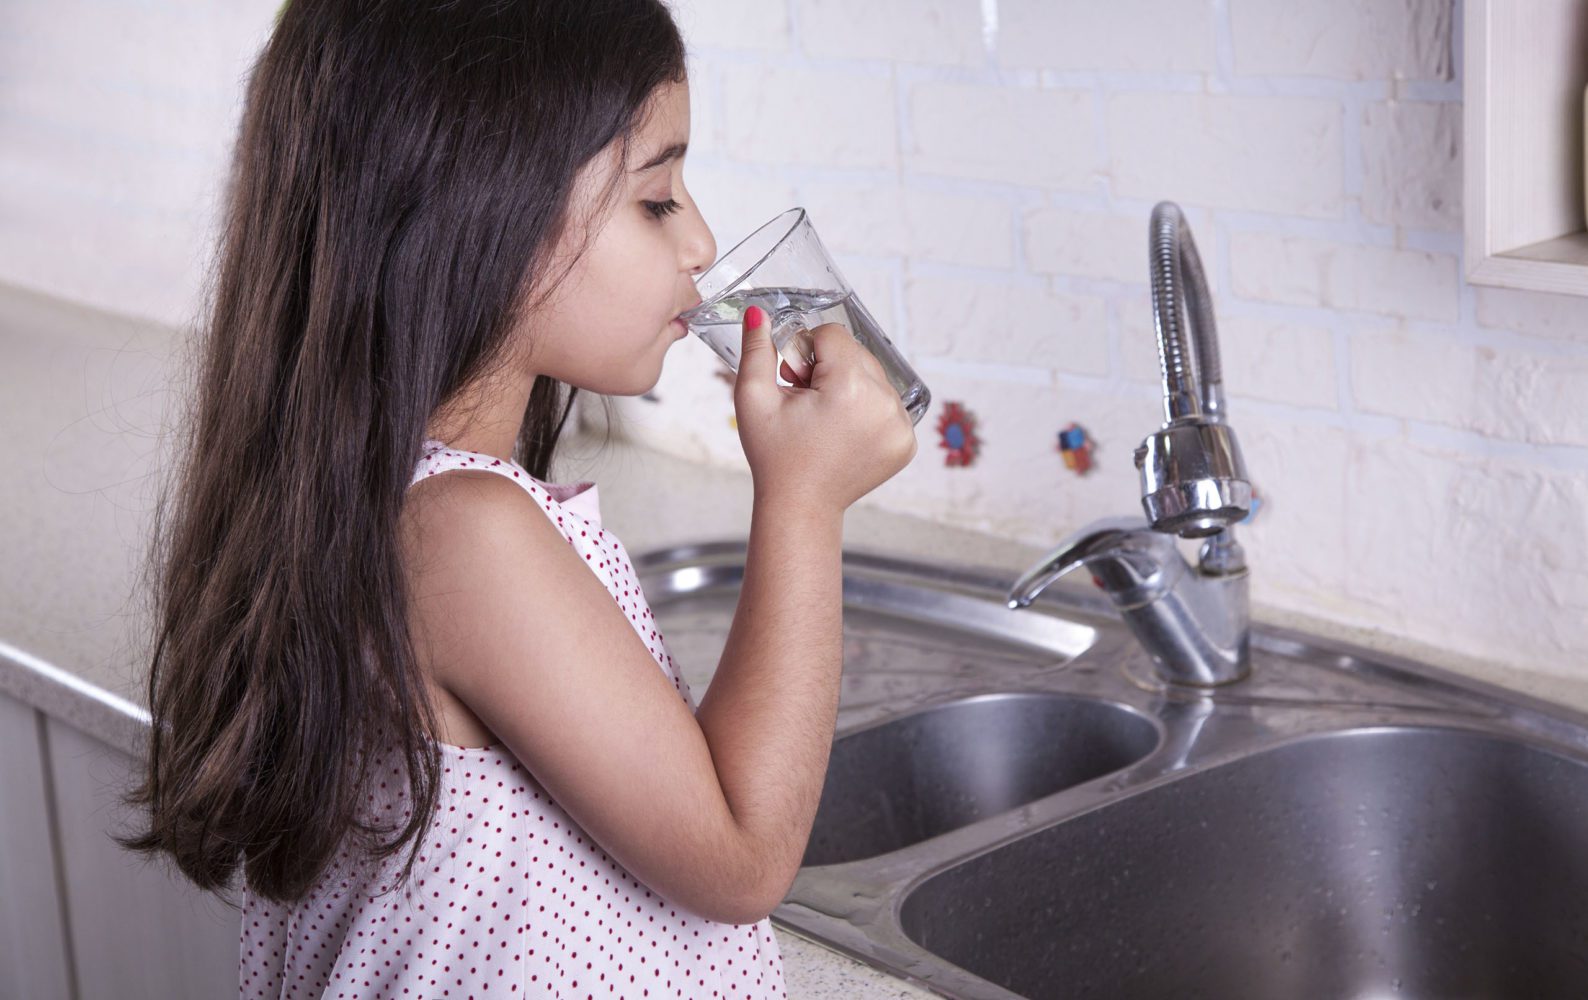 Жадно пьет воду. Девушка с питьевой водой. Человек пьет воду. Питье воды из под крана. Девушка со стаканом воды.